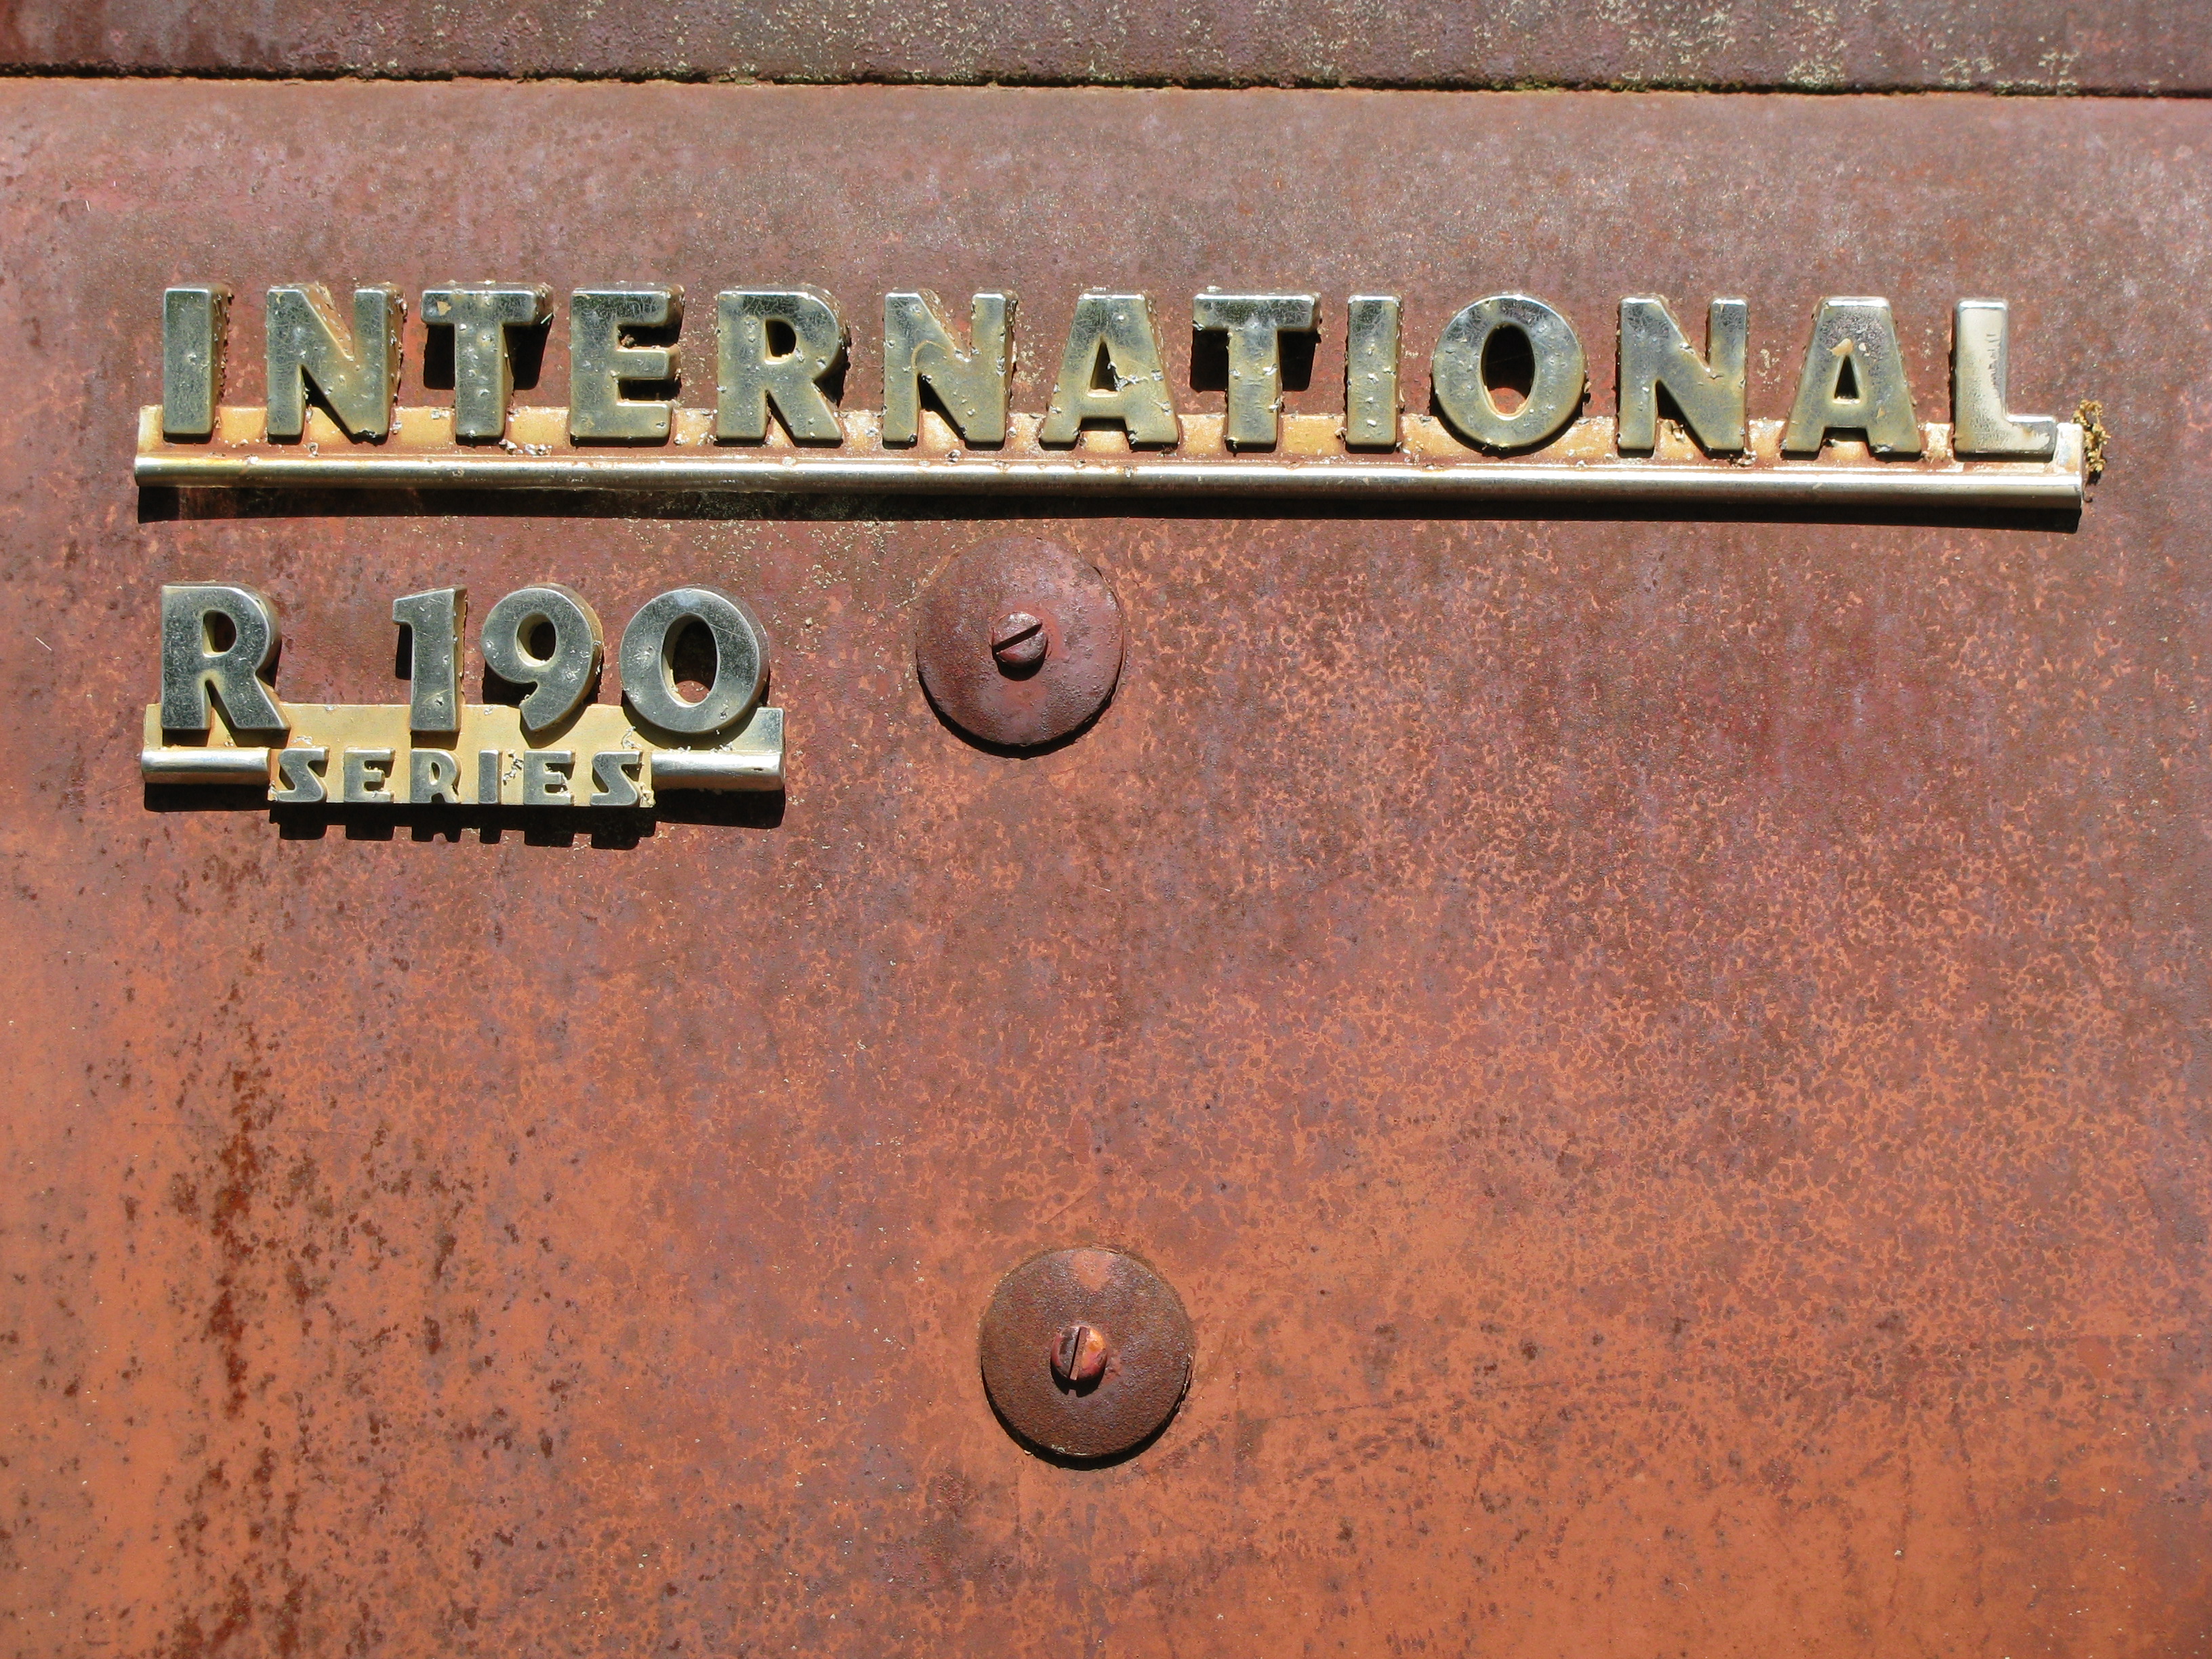 International R 190 series | Flickr - Photo Sharing!